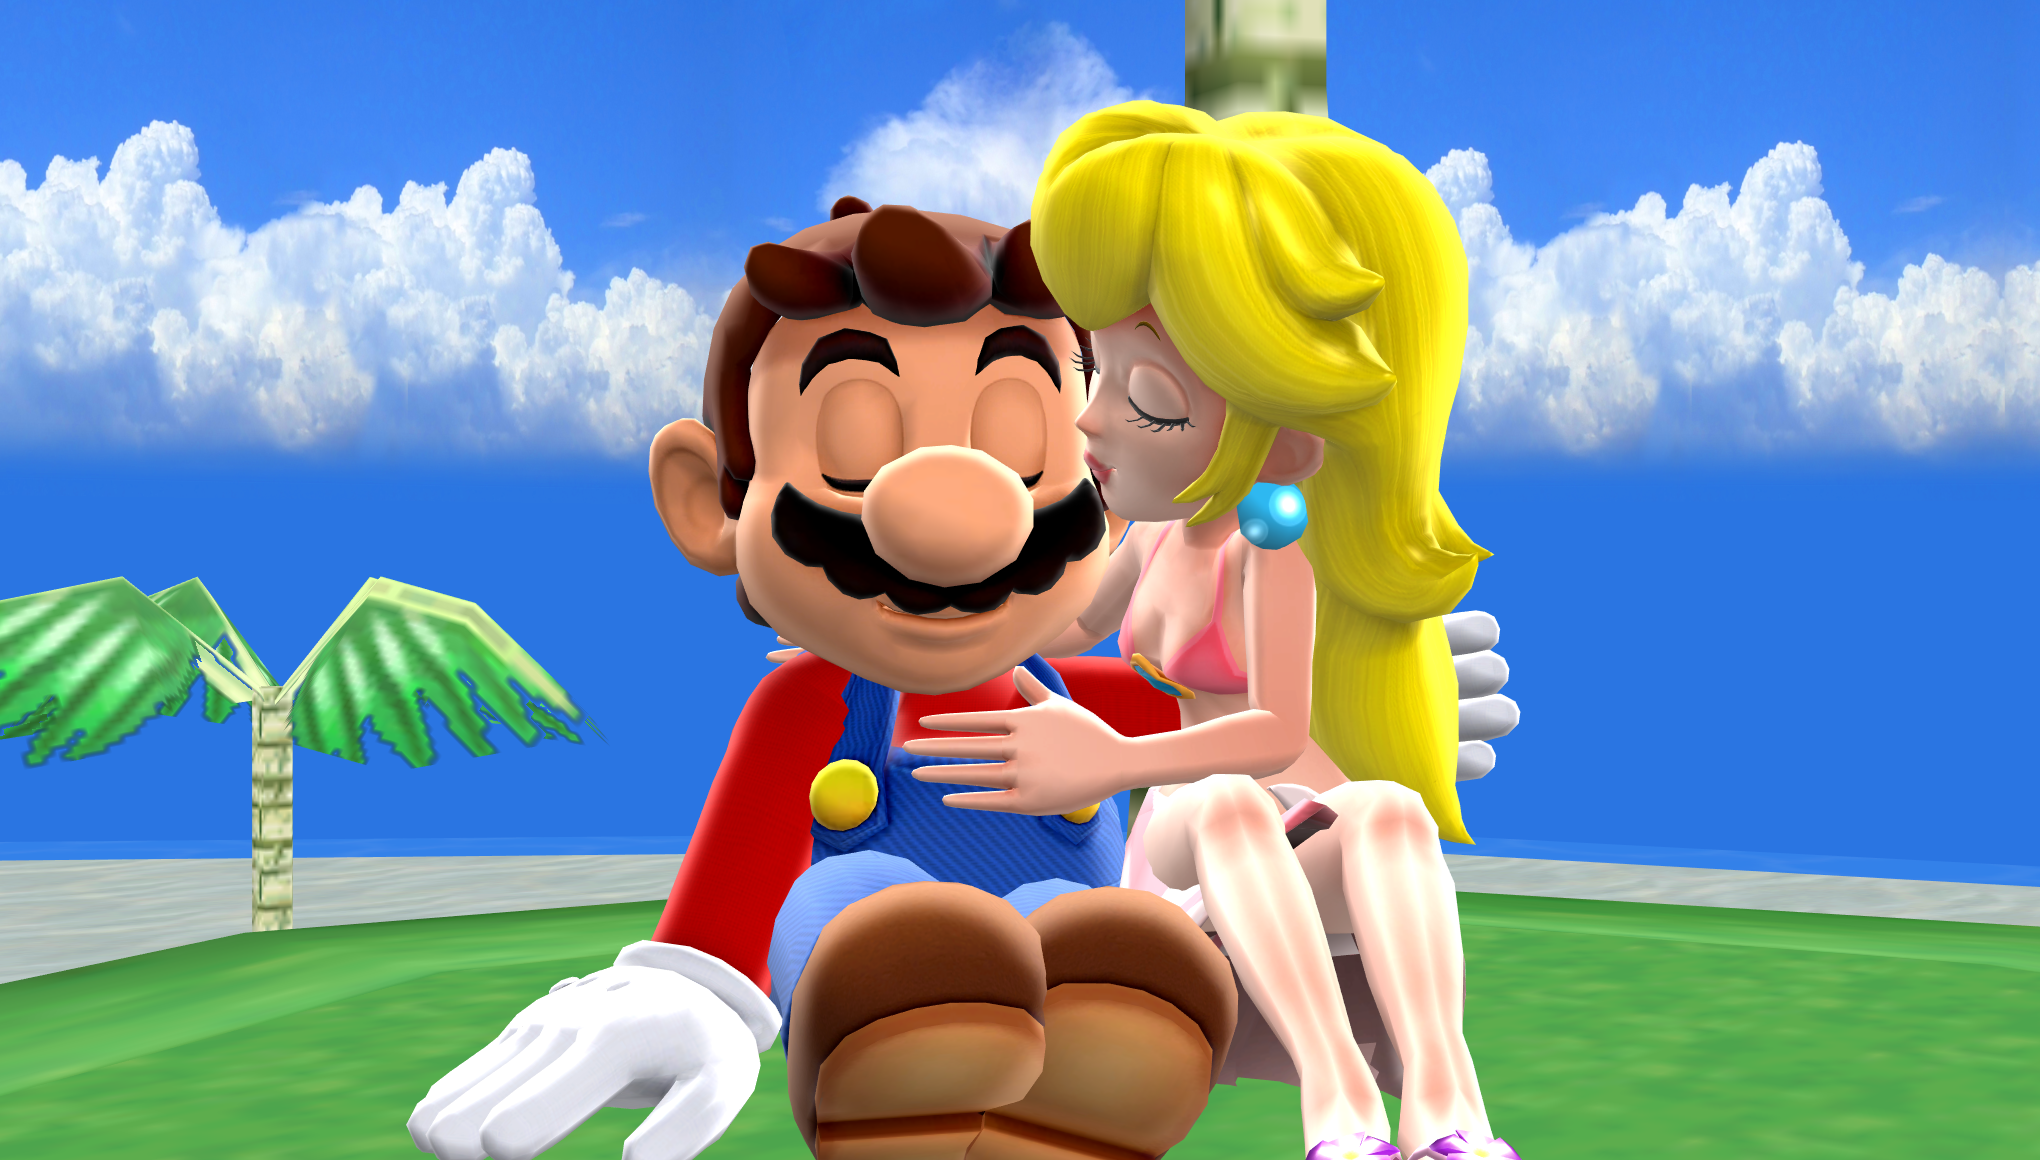 Mario and Peach in Sunshine Isles Beach MMD Kiss and Peach